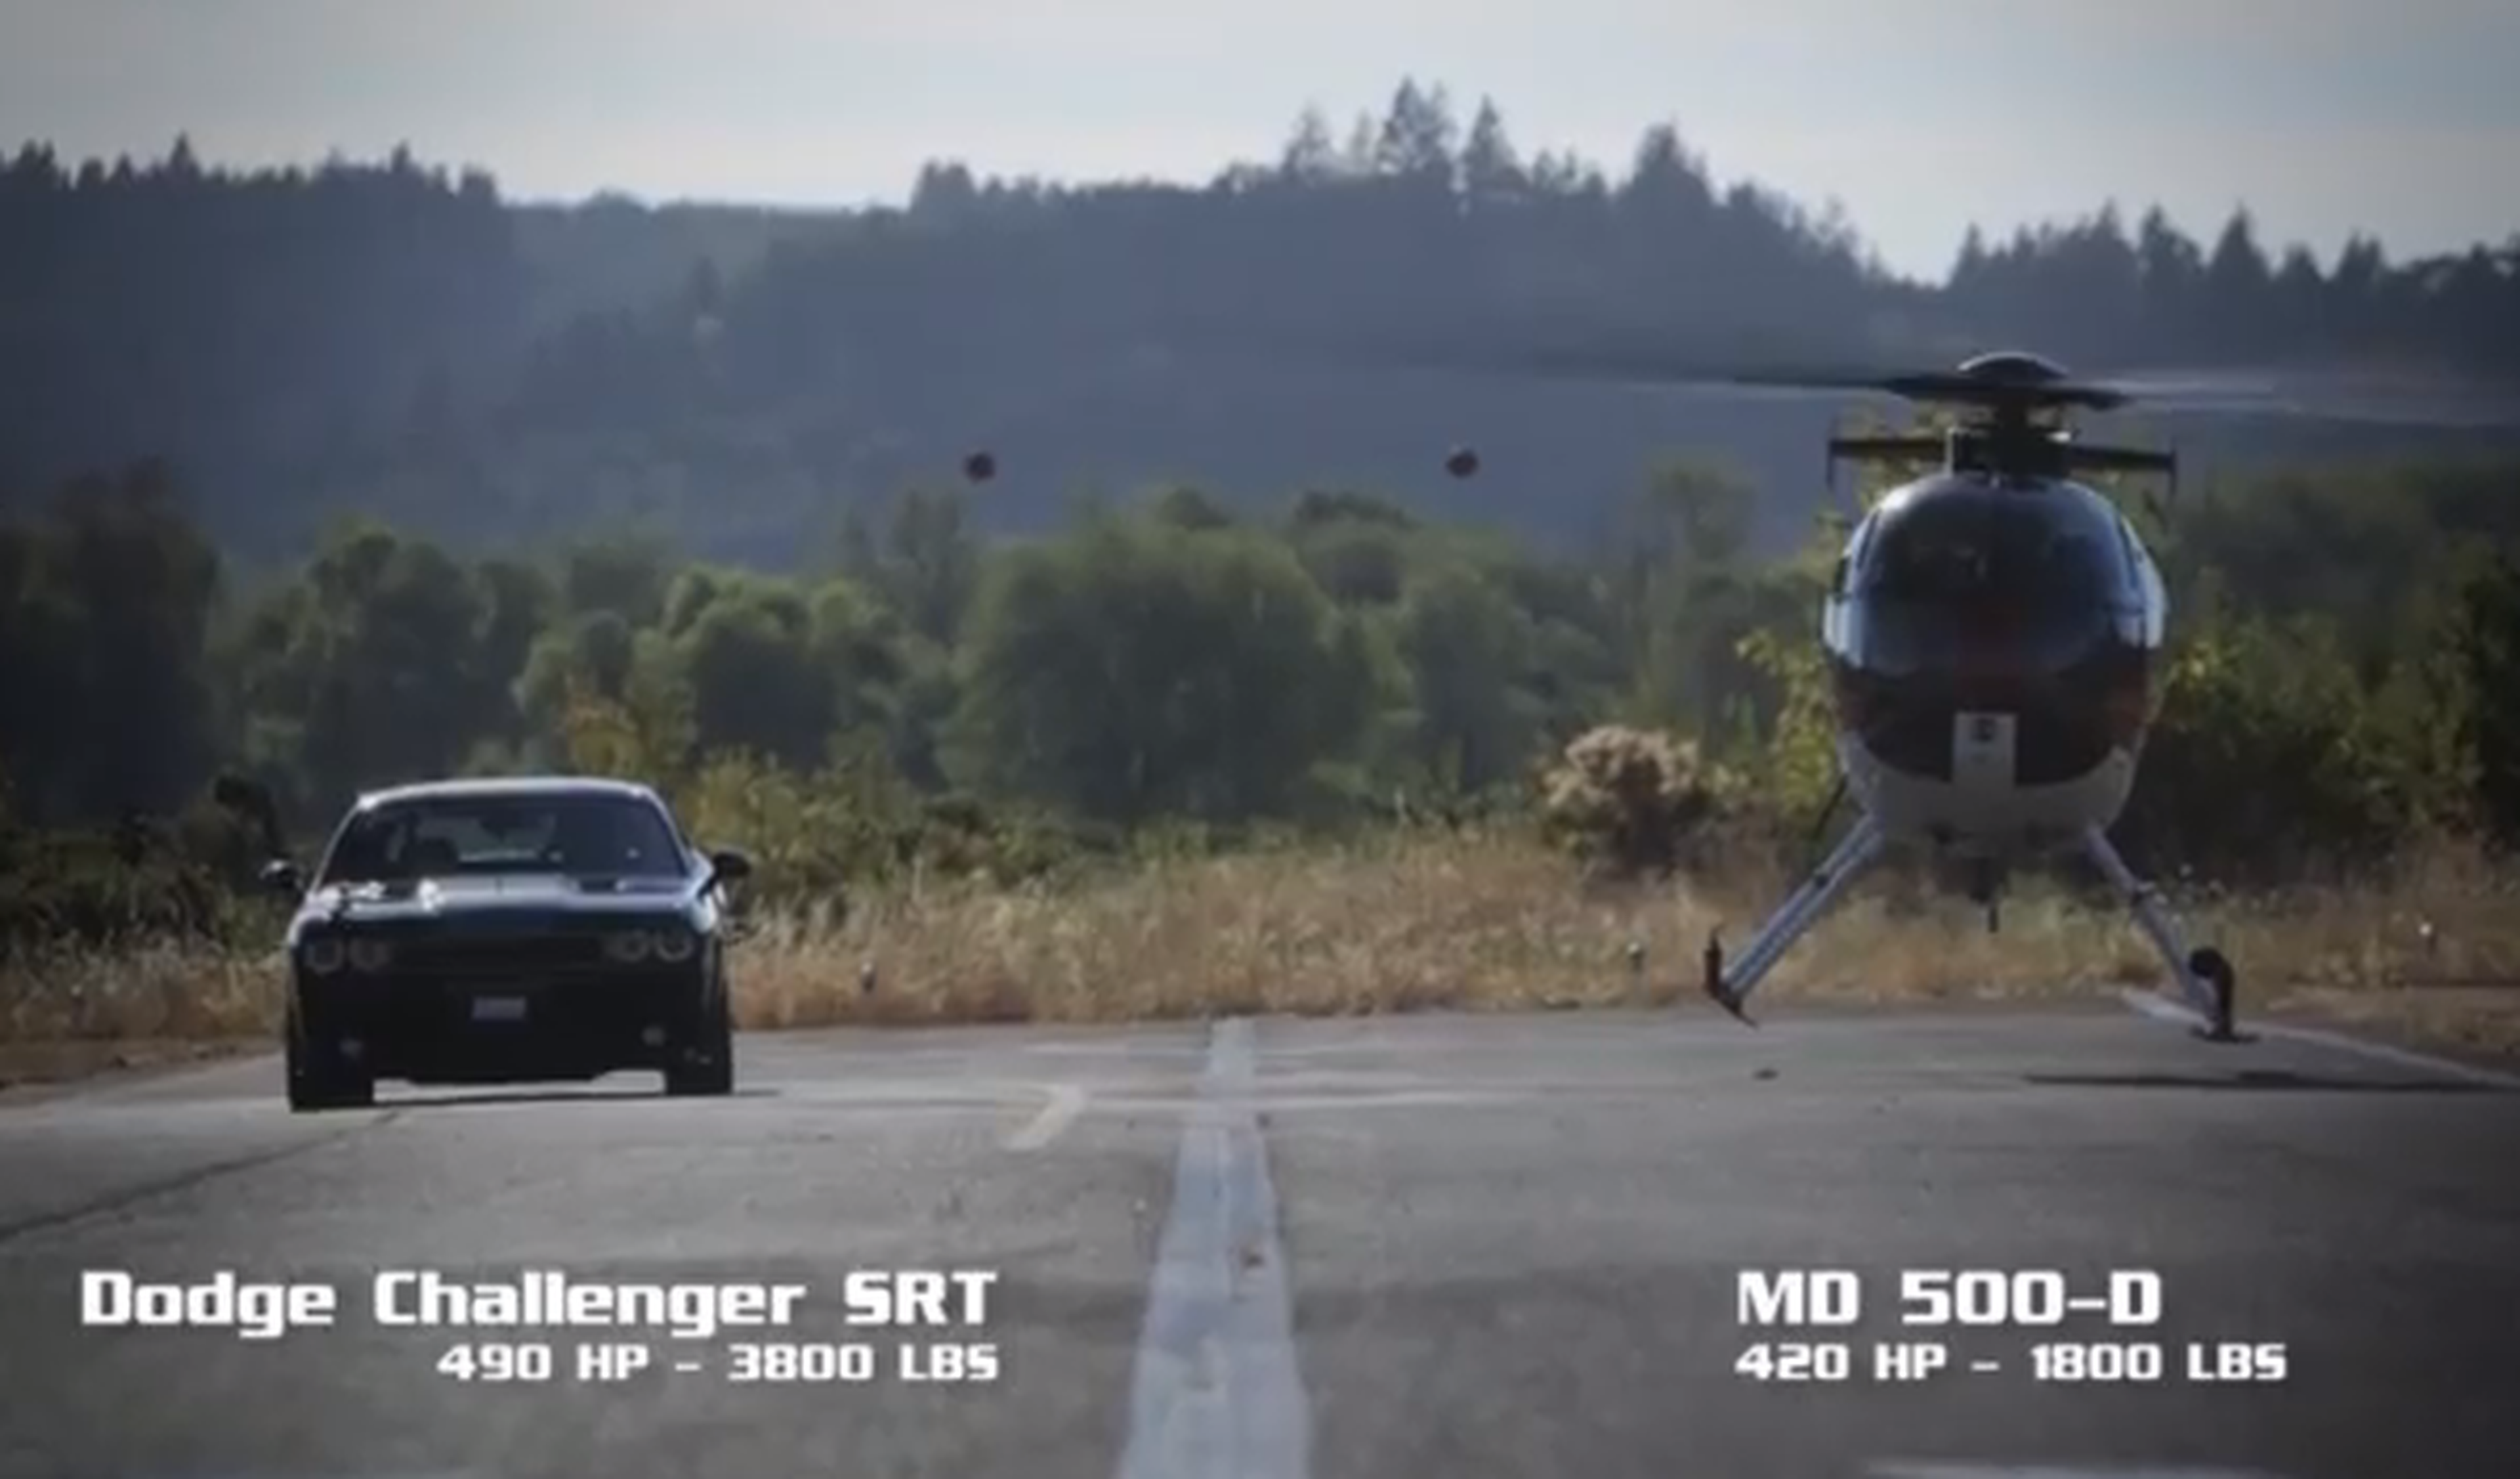 Helicóptero vs Dodge Challenger, ¿cuál es más rápido?